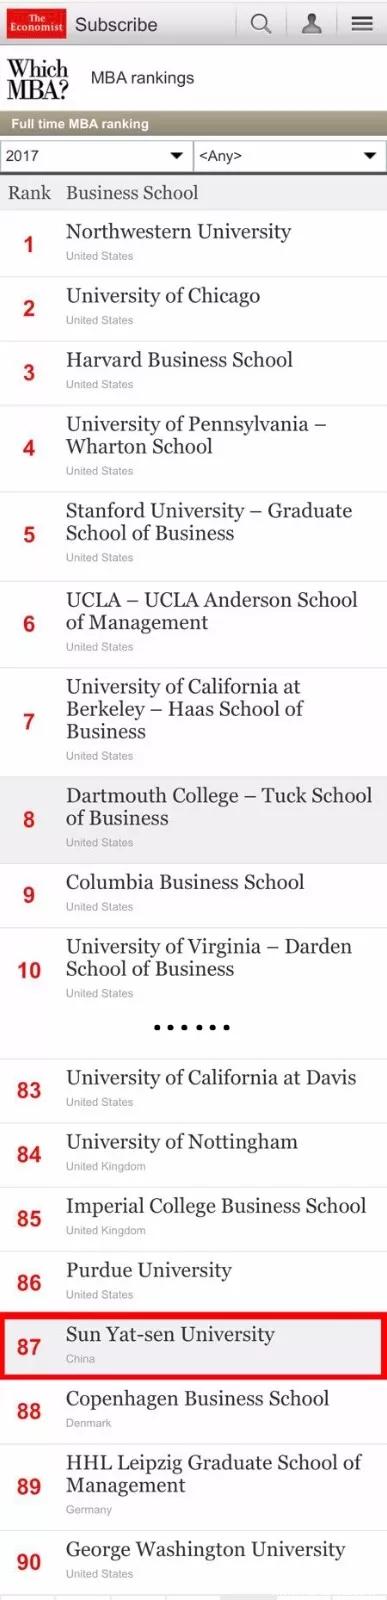 2017年全球MBA排行榜：中山大学管理学院位居第87，跃升11位